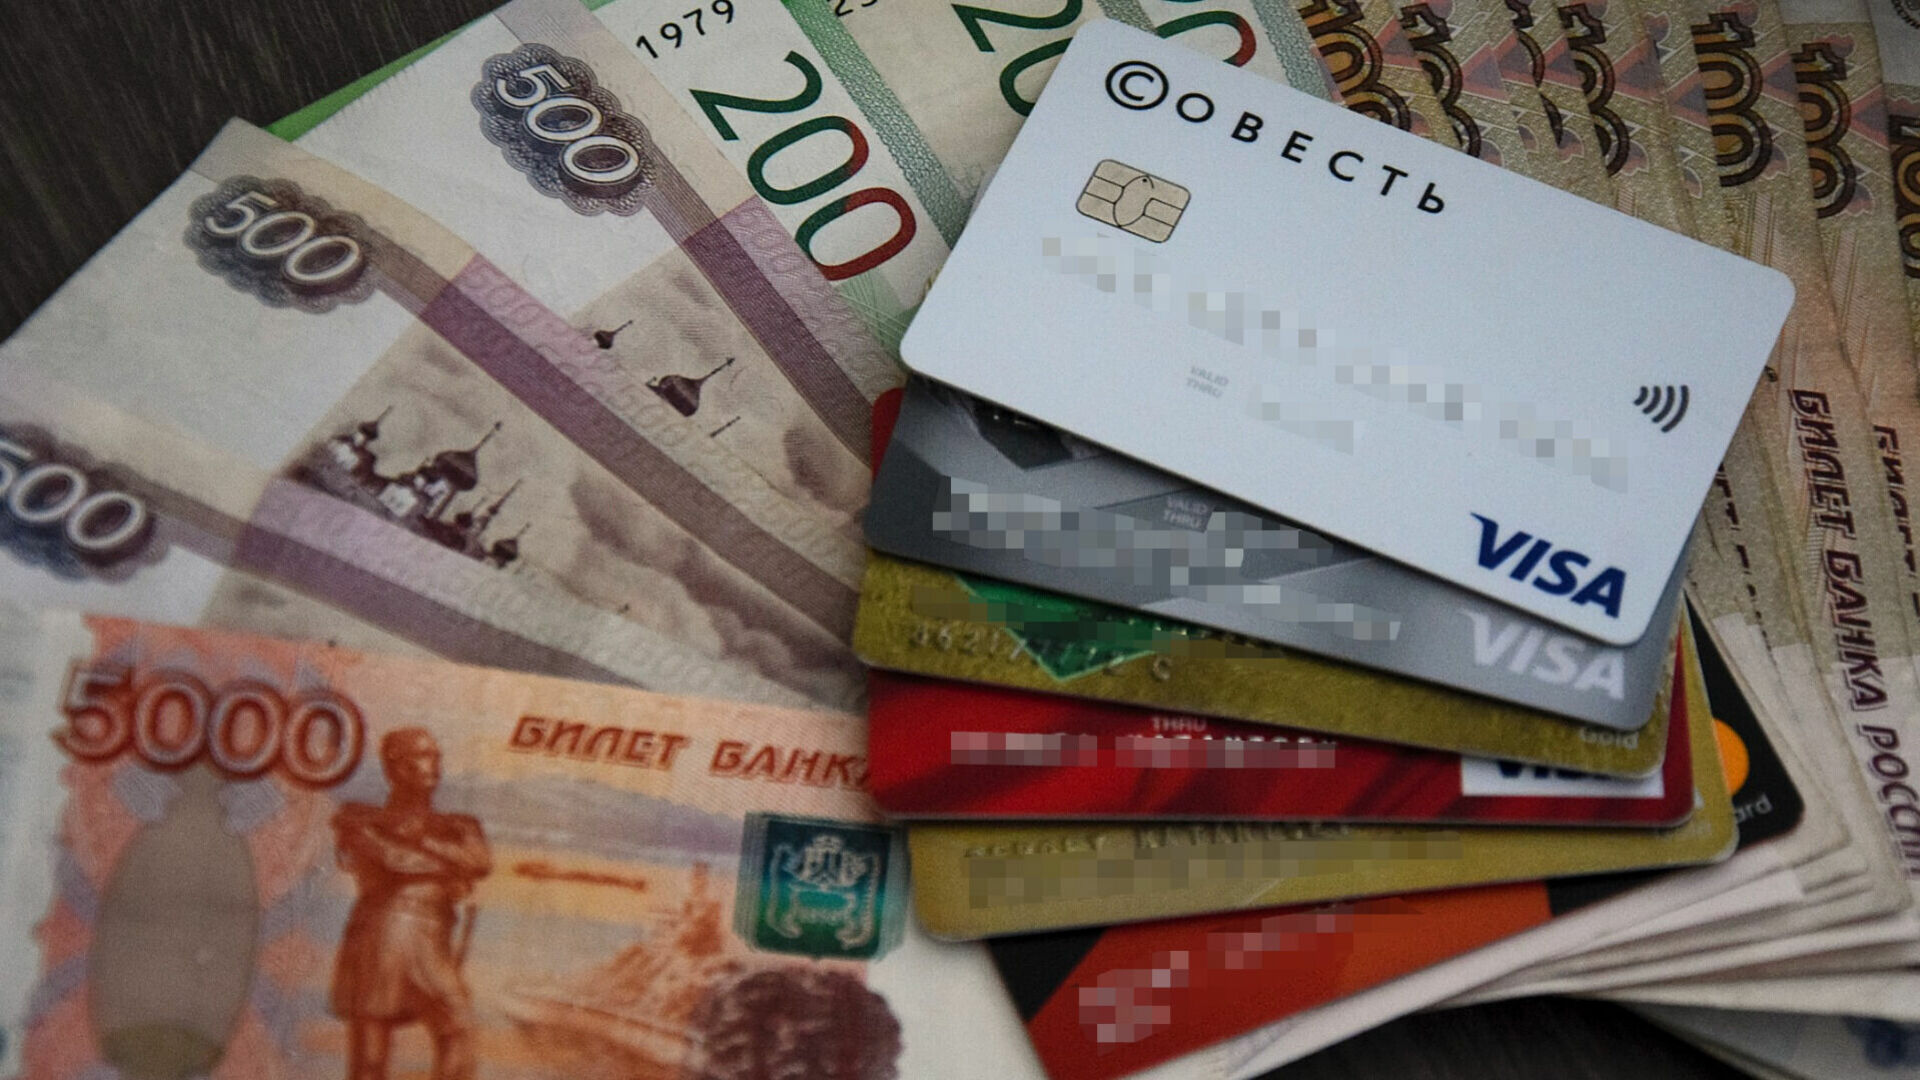 Безработный житель Тюмени взял кредит у банка на 460 рублей и сбежал